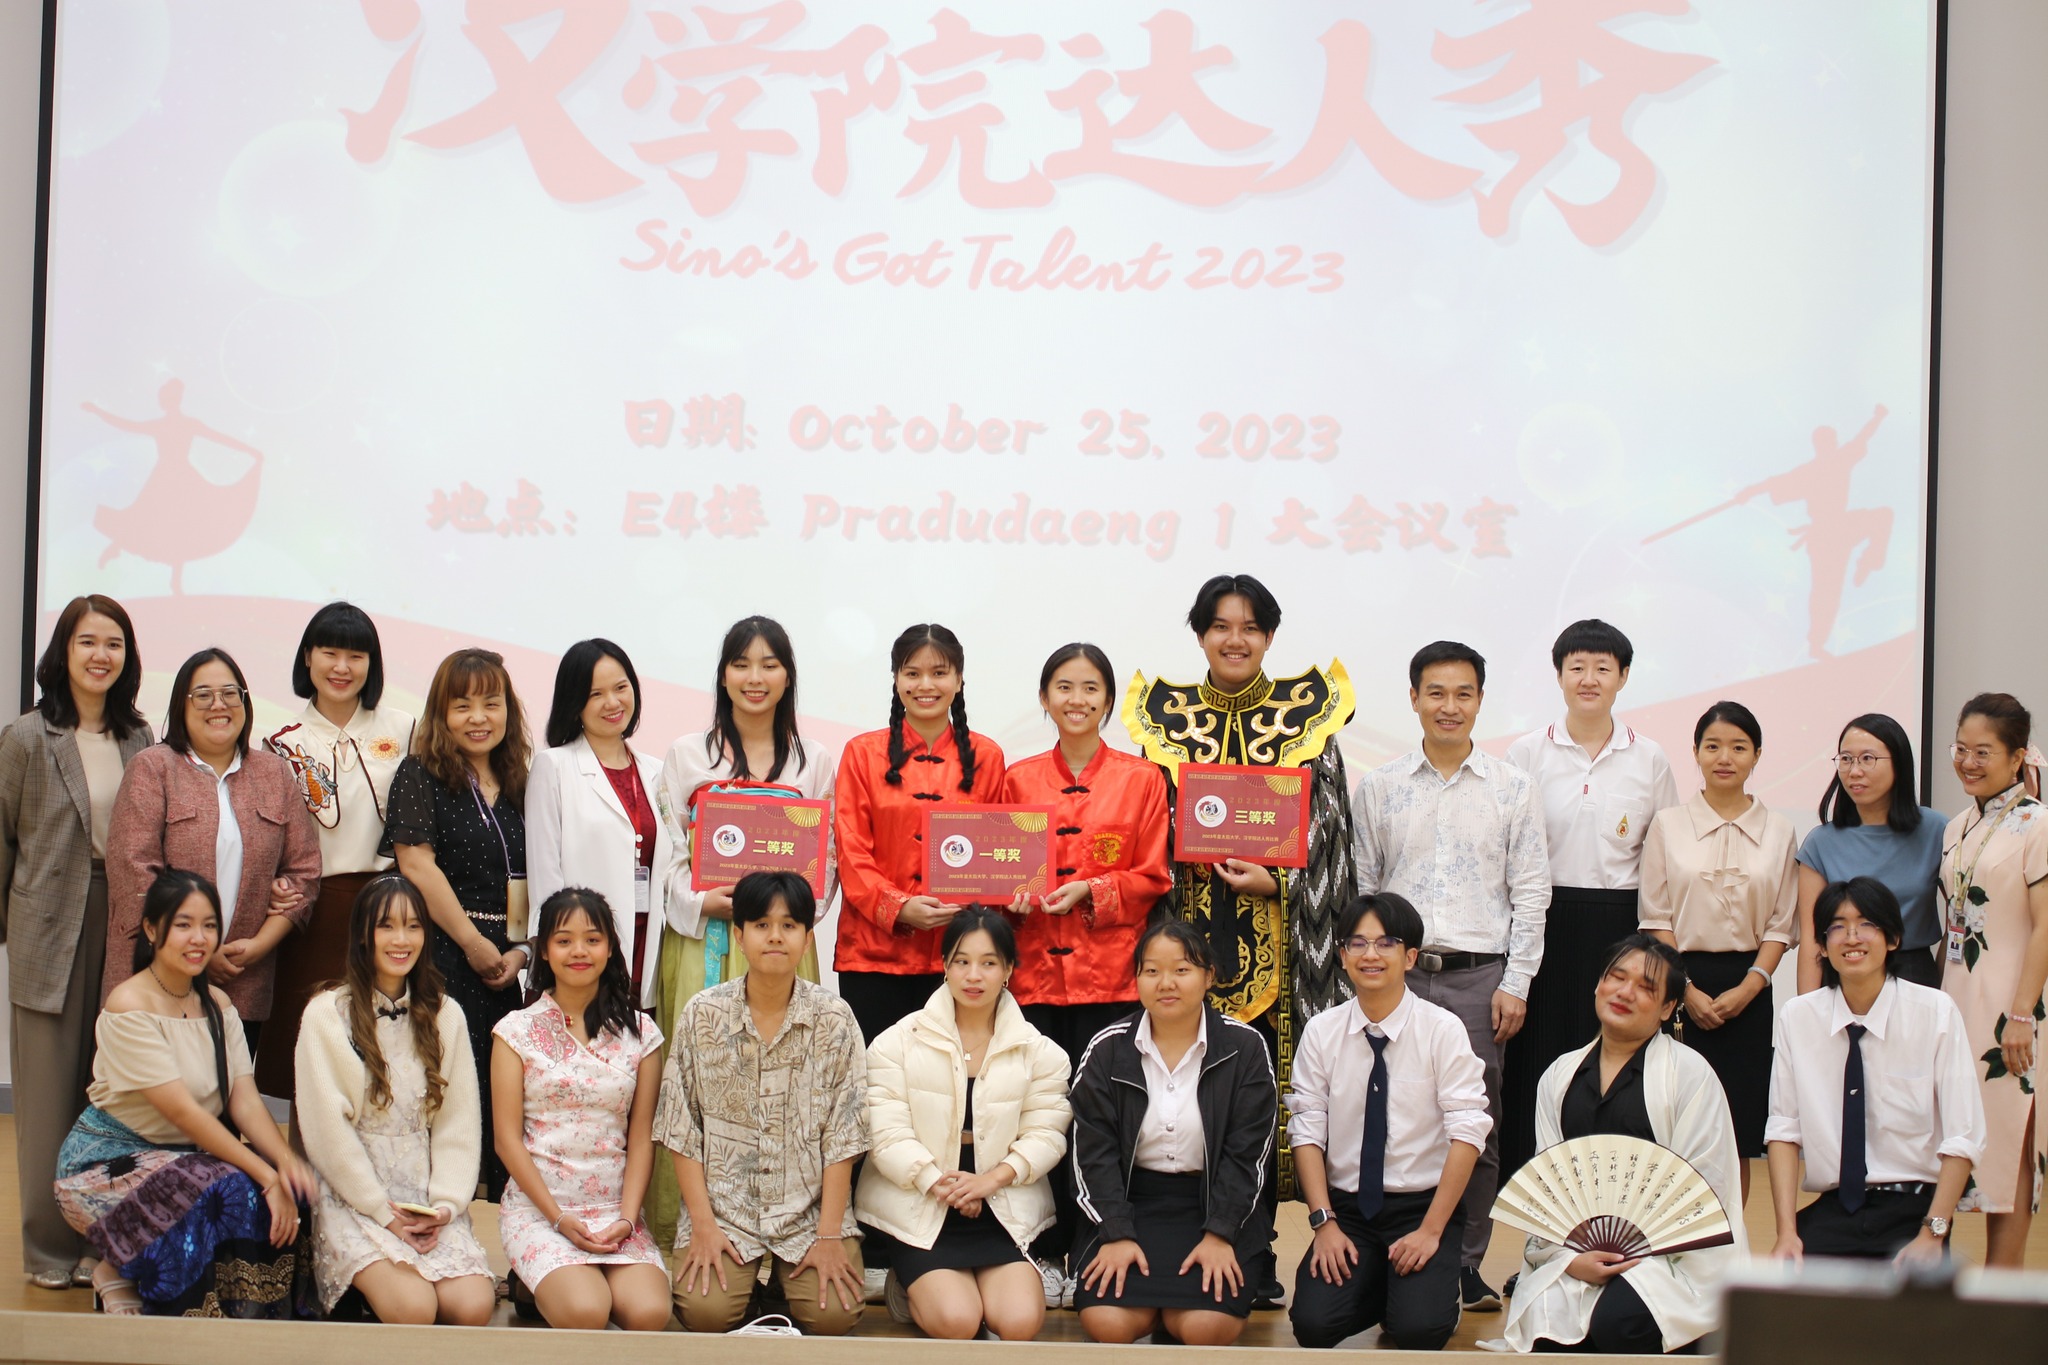 ขอแสดงความยินดีกับผู้ชนะกิจกกรมการแข่งขัน Sino's Got Talent ประจำปี 2023